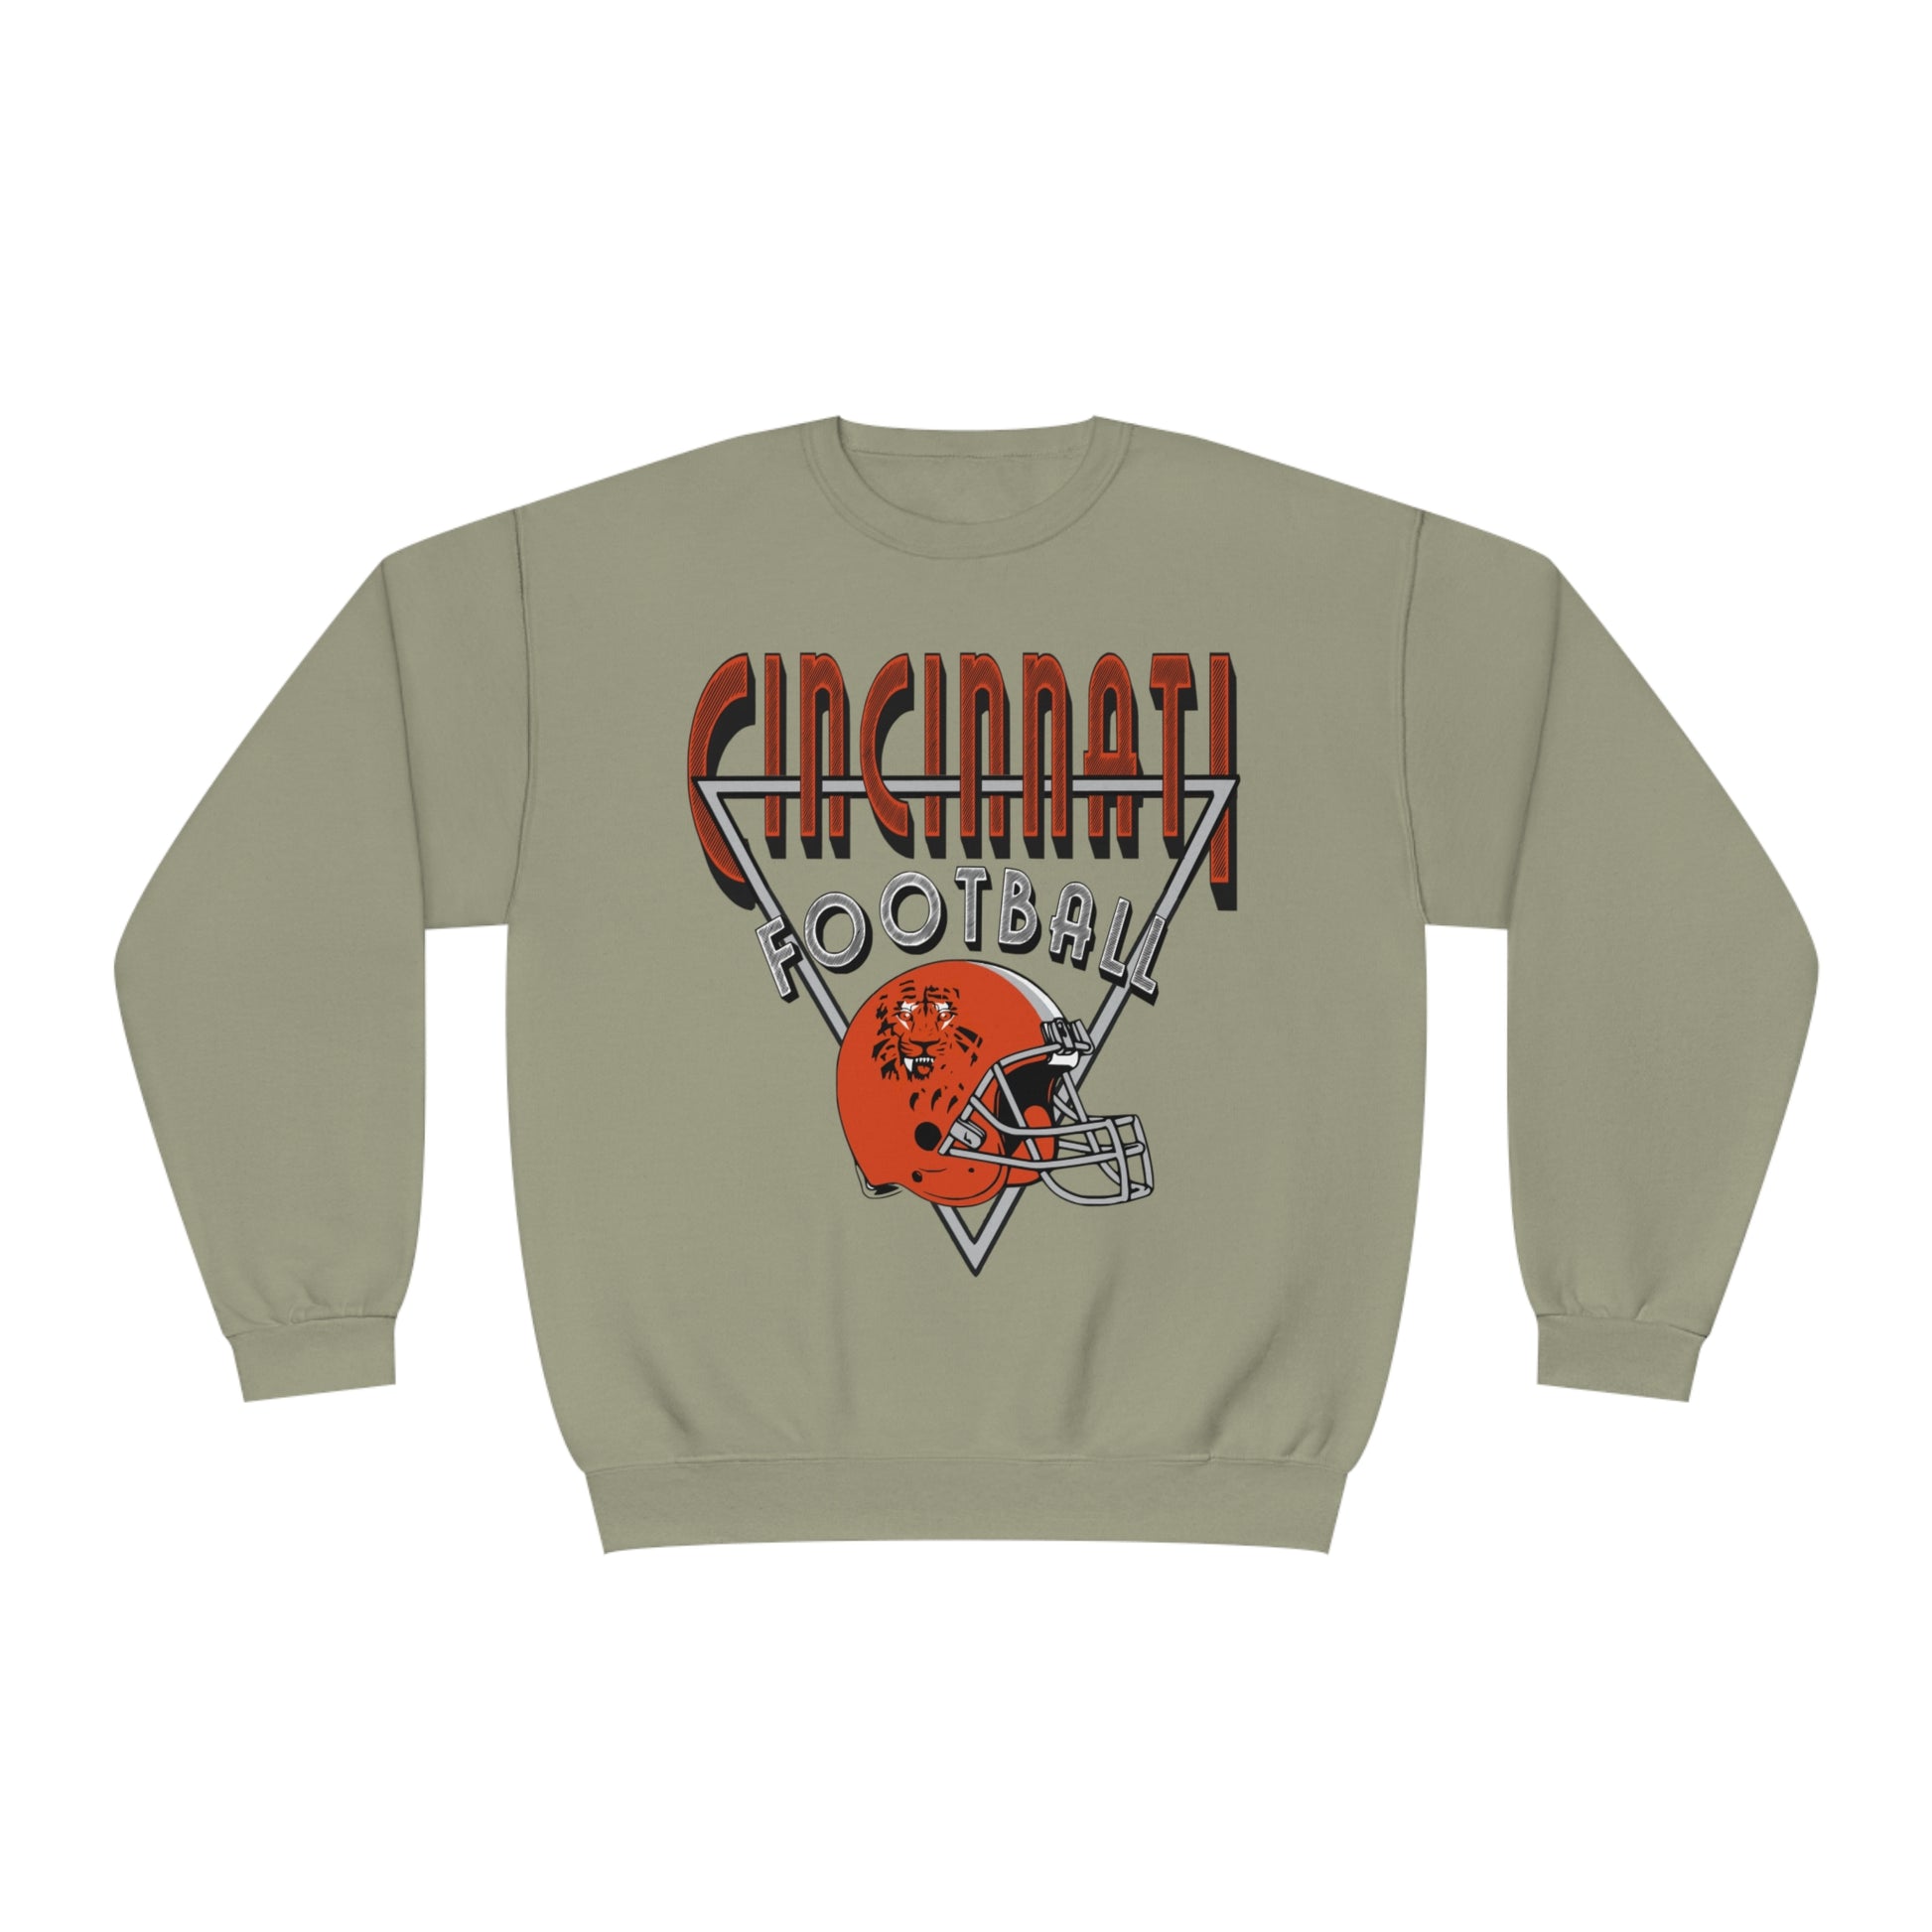 Vintage Cincinnati Bengals Crewneck Sweatshirt - 90's NFL Football Hoodie - Men's & Women's 90's Oversized Khaki